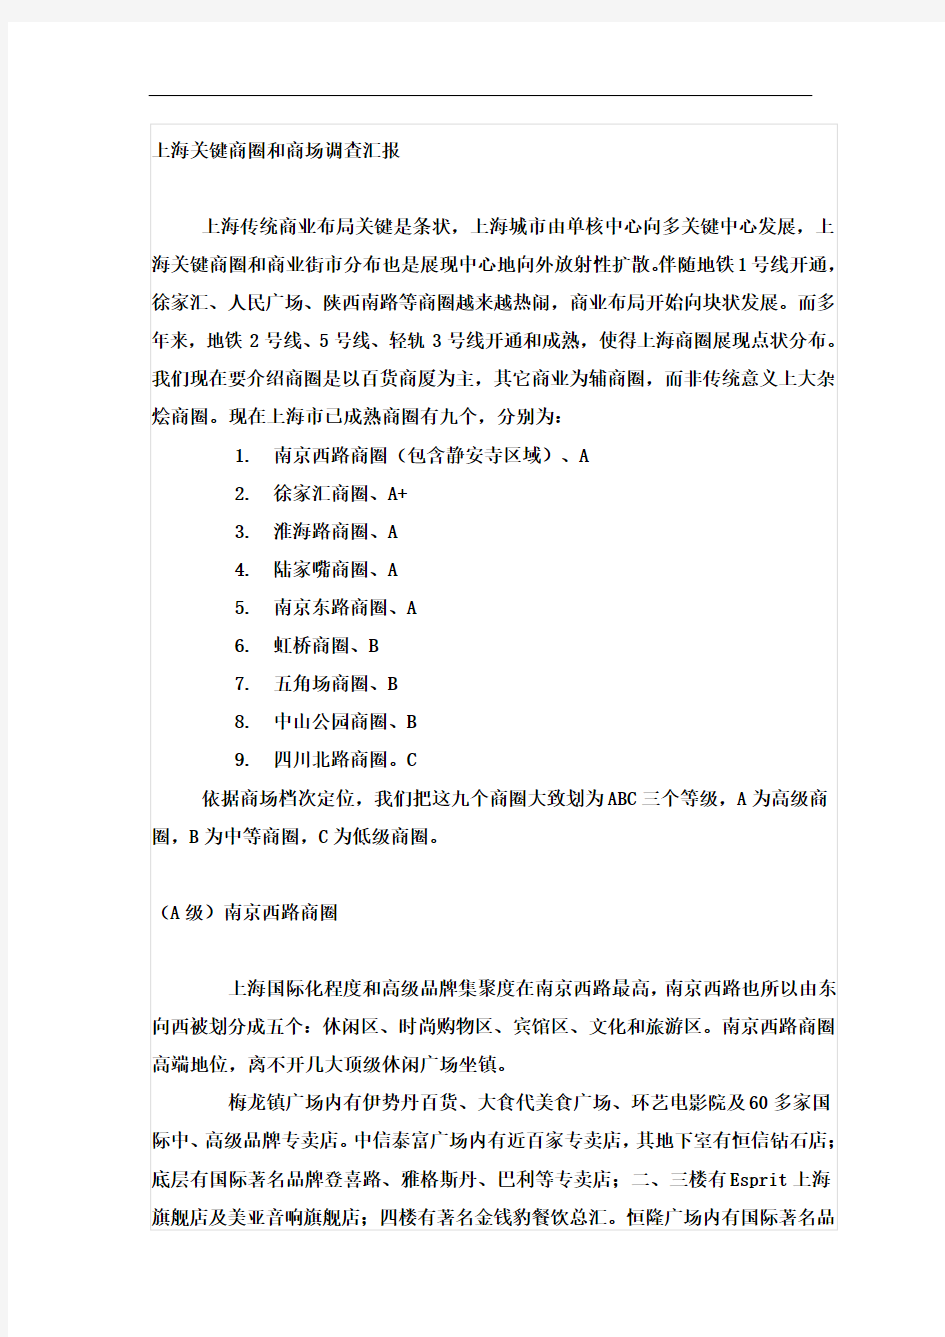 上海主要商圈和商场调查报告